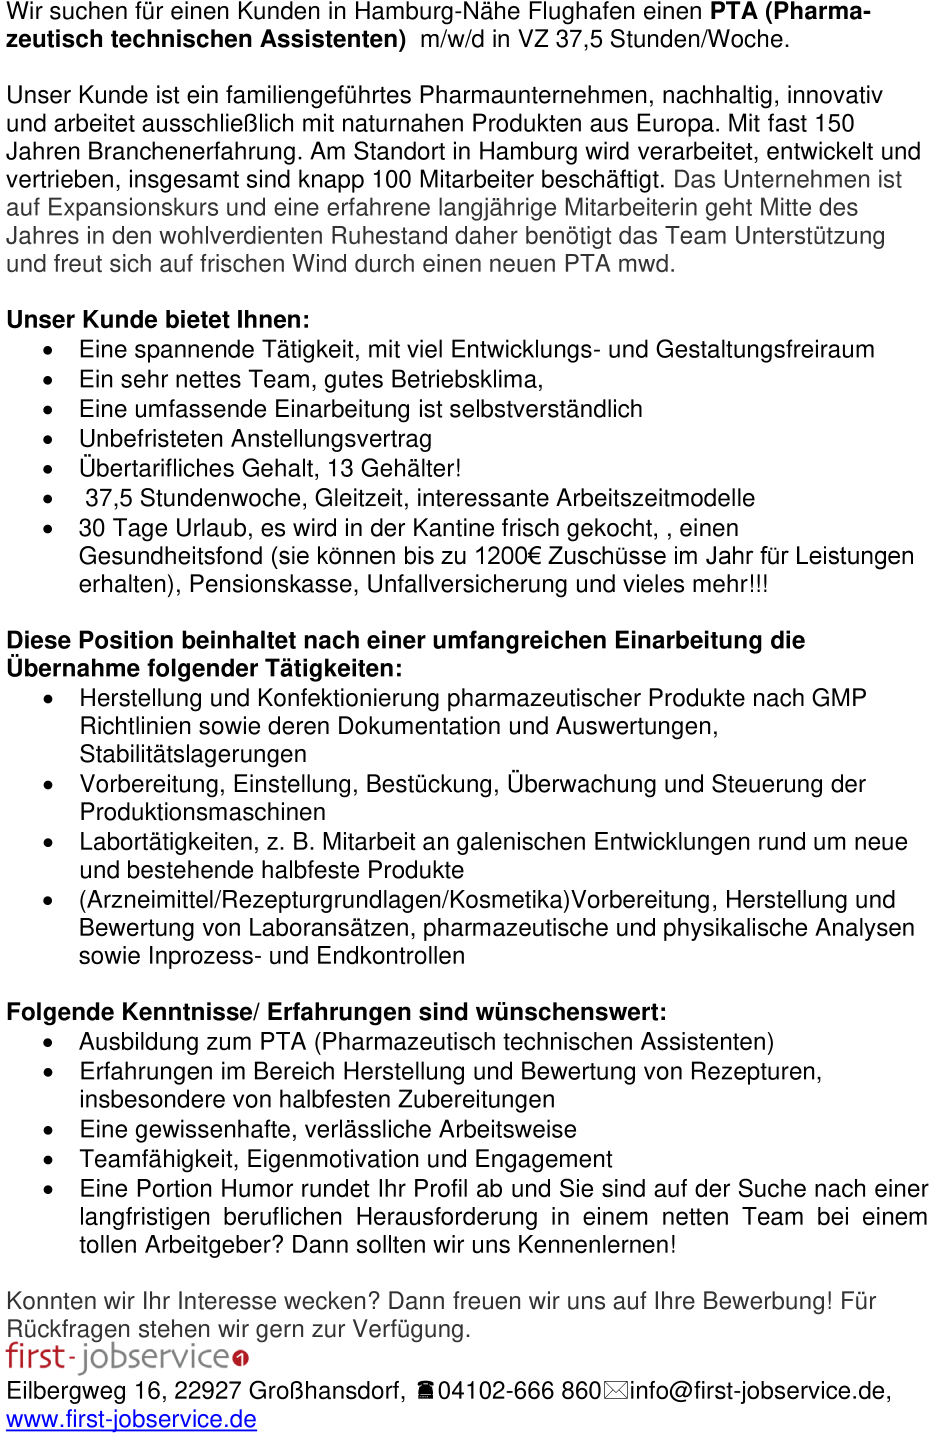 Pharmazeutisch technische Assistenz - PTA - (m/w/d) 37,5 Std. unbefristet mega!